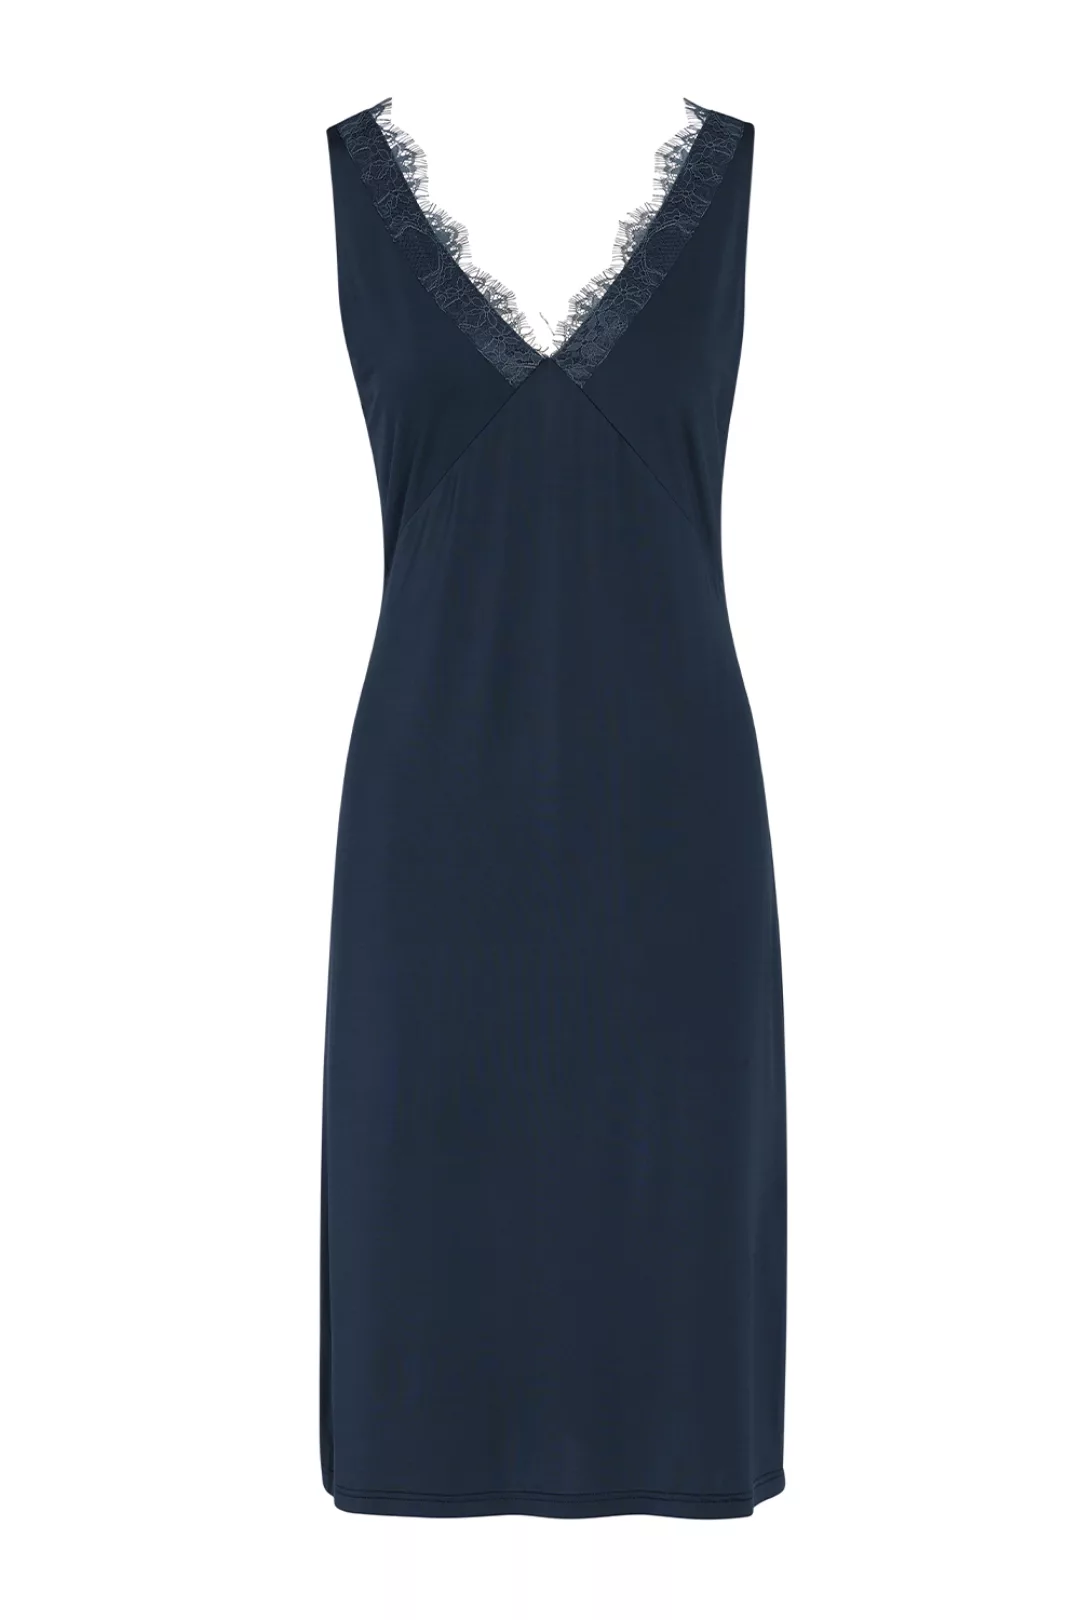 ESSENZA Lexi Uni Nachthemd ärmellos Loungewear 4 42 blau günstig online kaufen